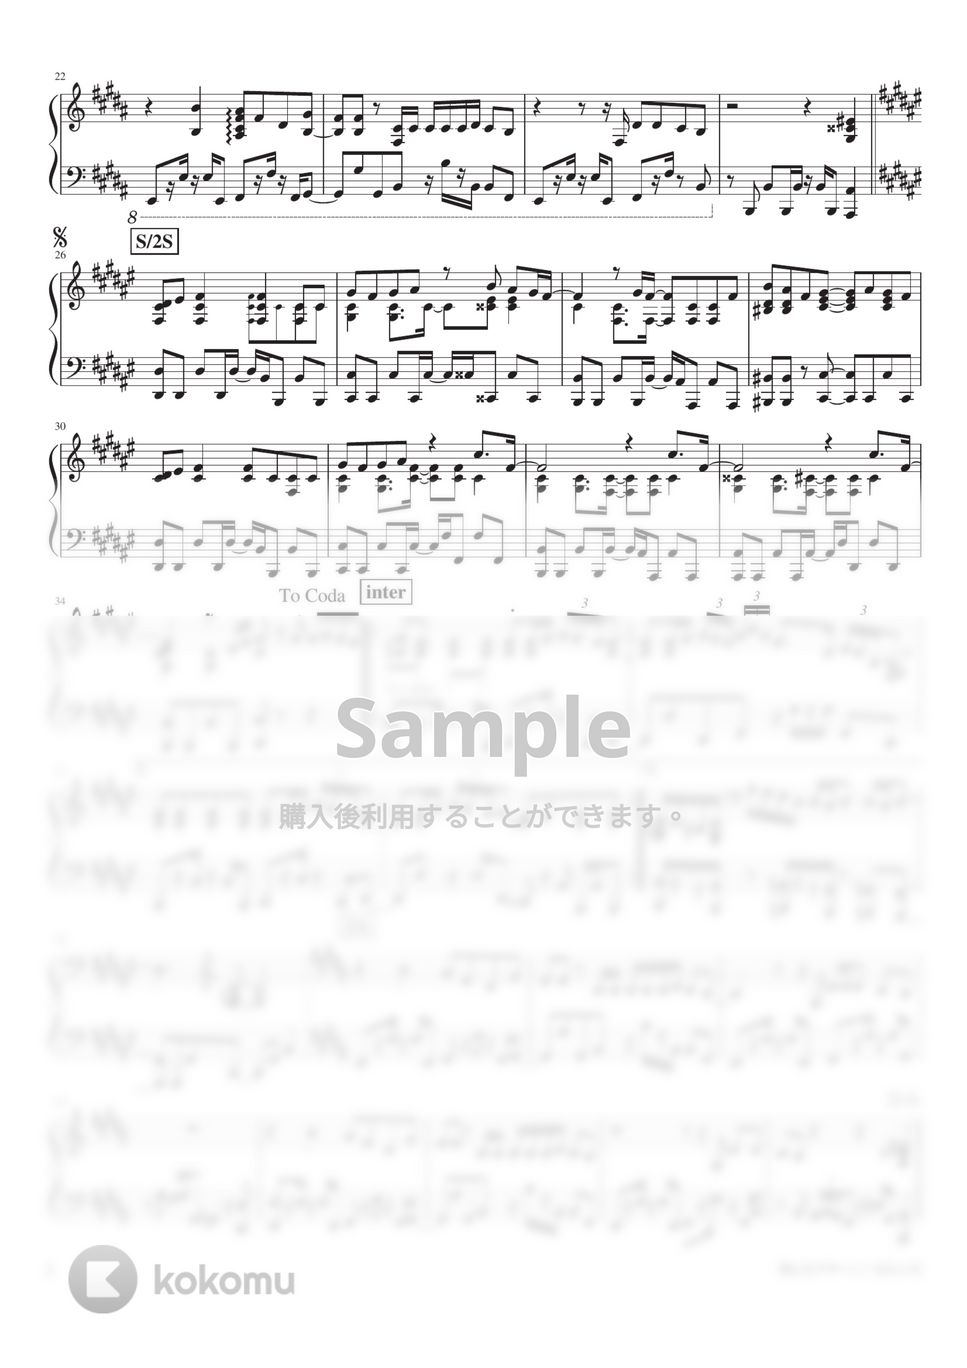 ヨルシカ - 雨とカプチーノ (PianoSolo) by 深根 / Fukane